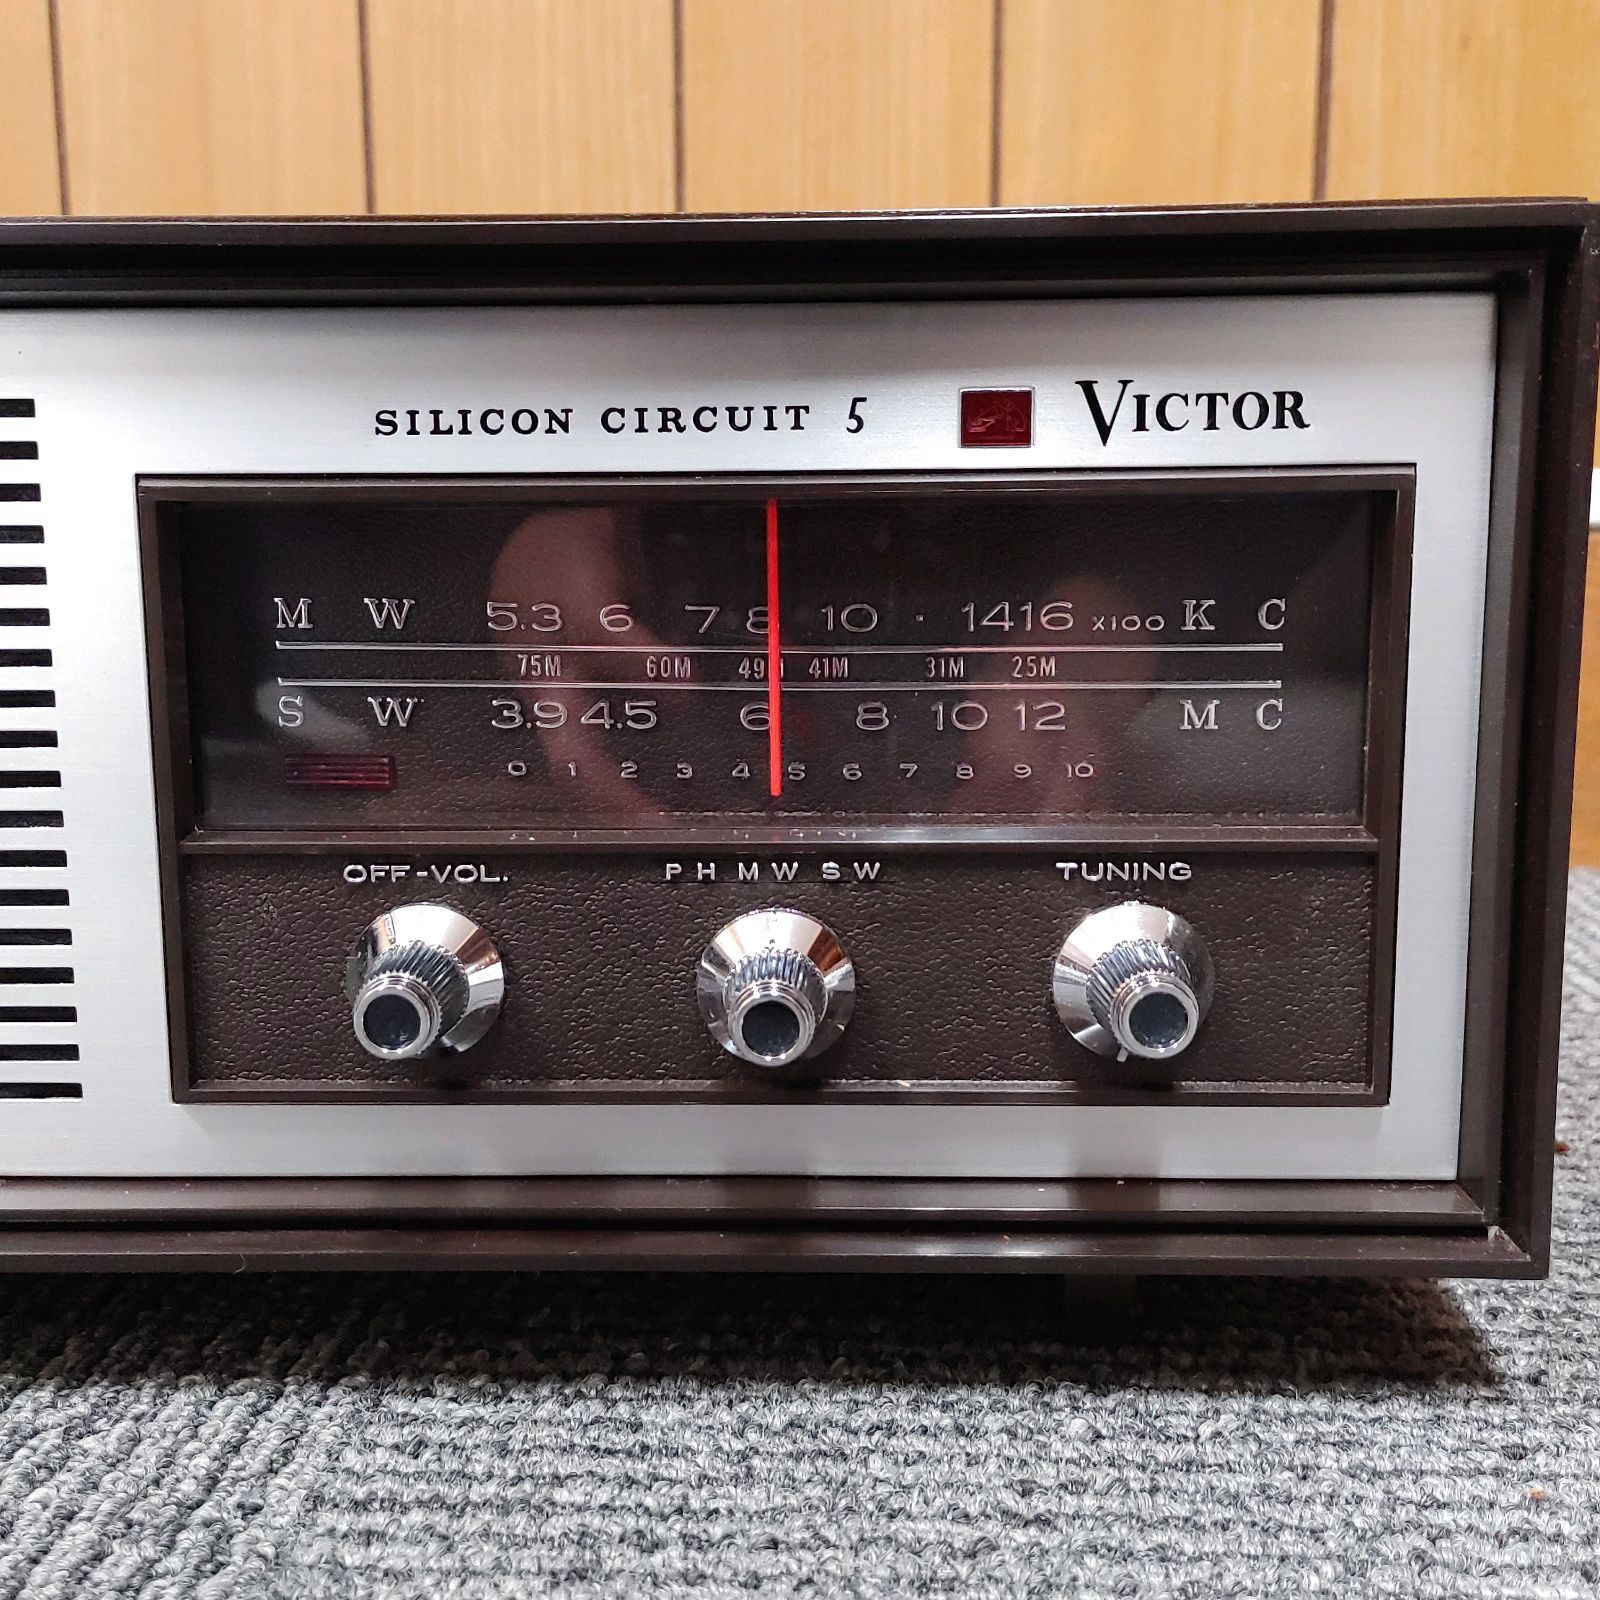 初売りヤフオク! - ビクター ラジオ SILICON CIRCUIT 5 5H-258 VIC 